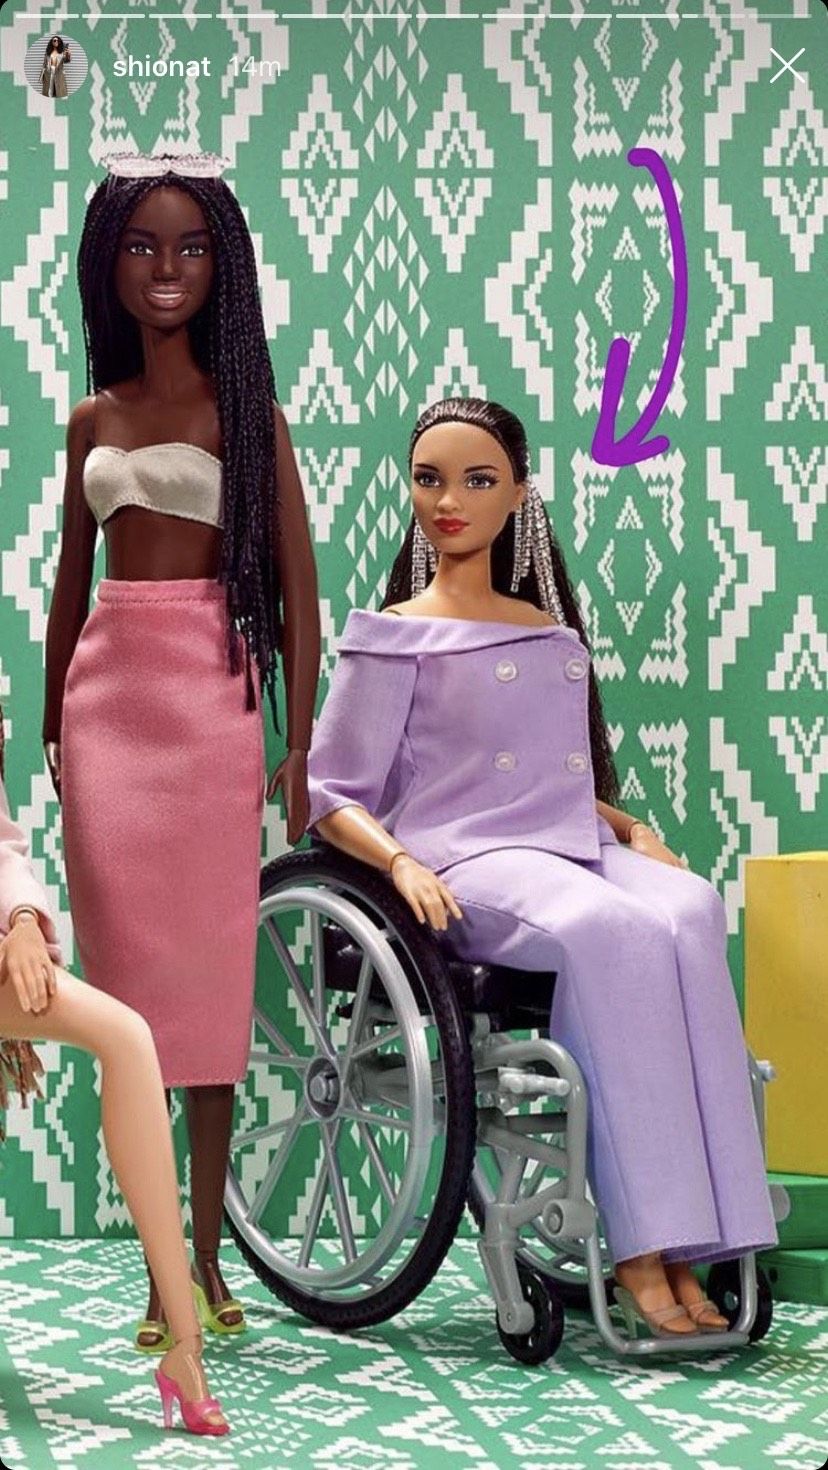 Barbie célèbre la diversité à l'occasion du Black History Month